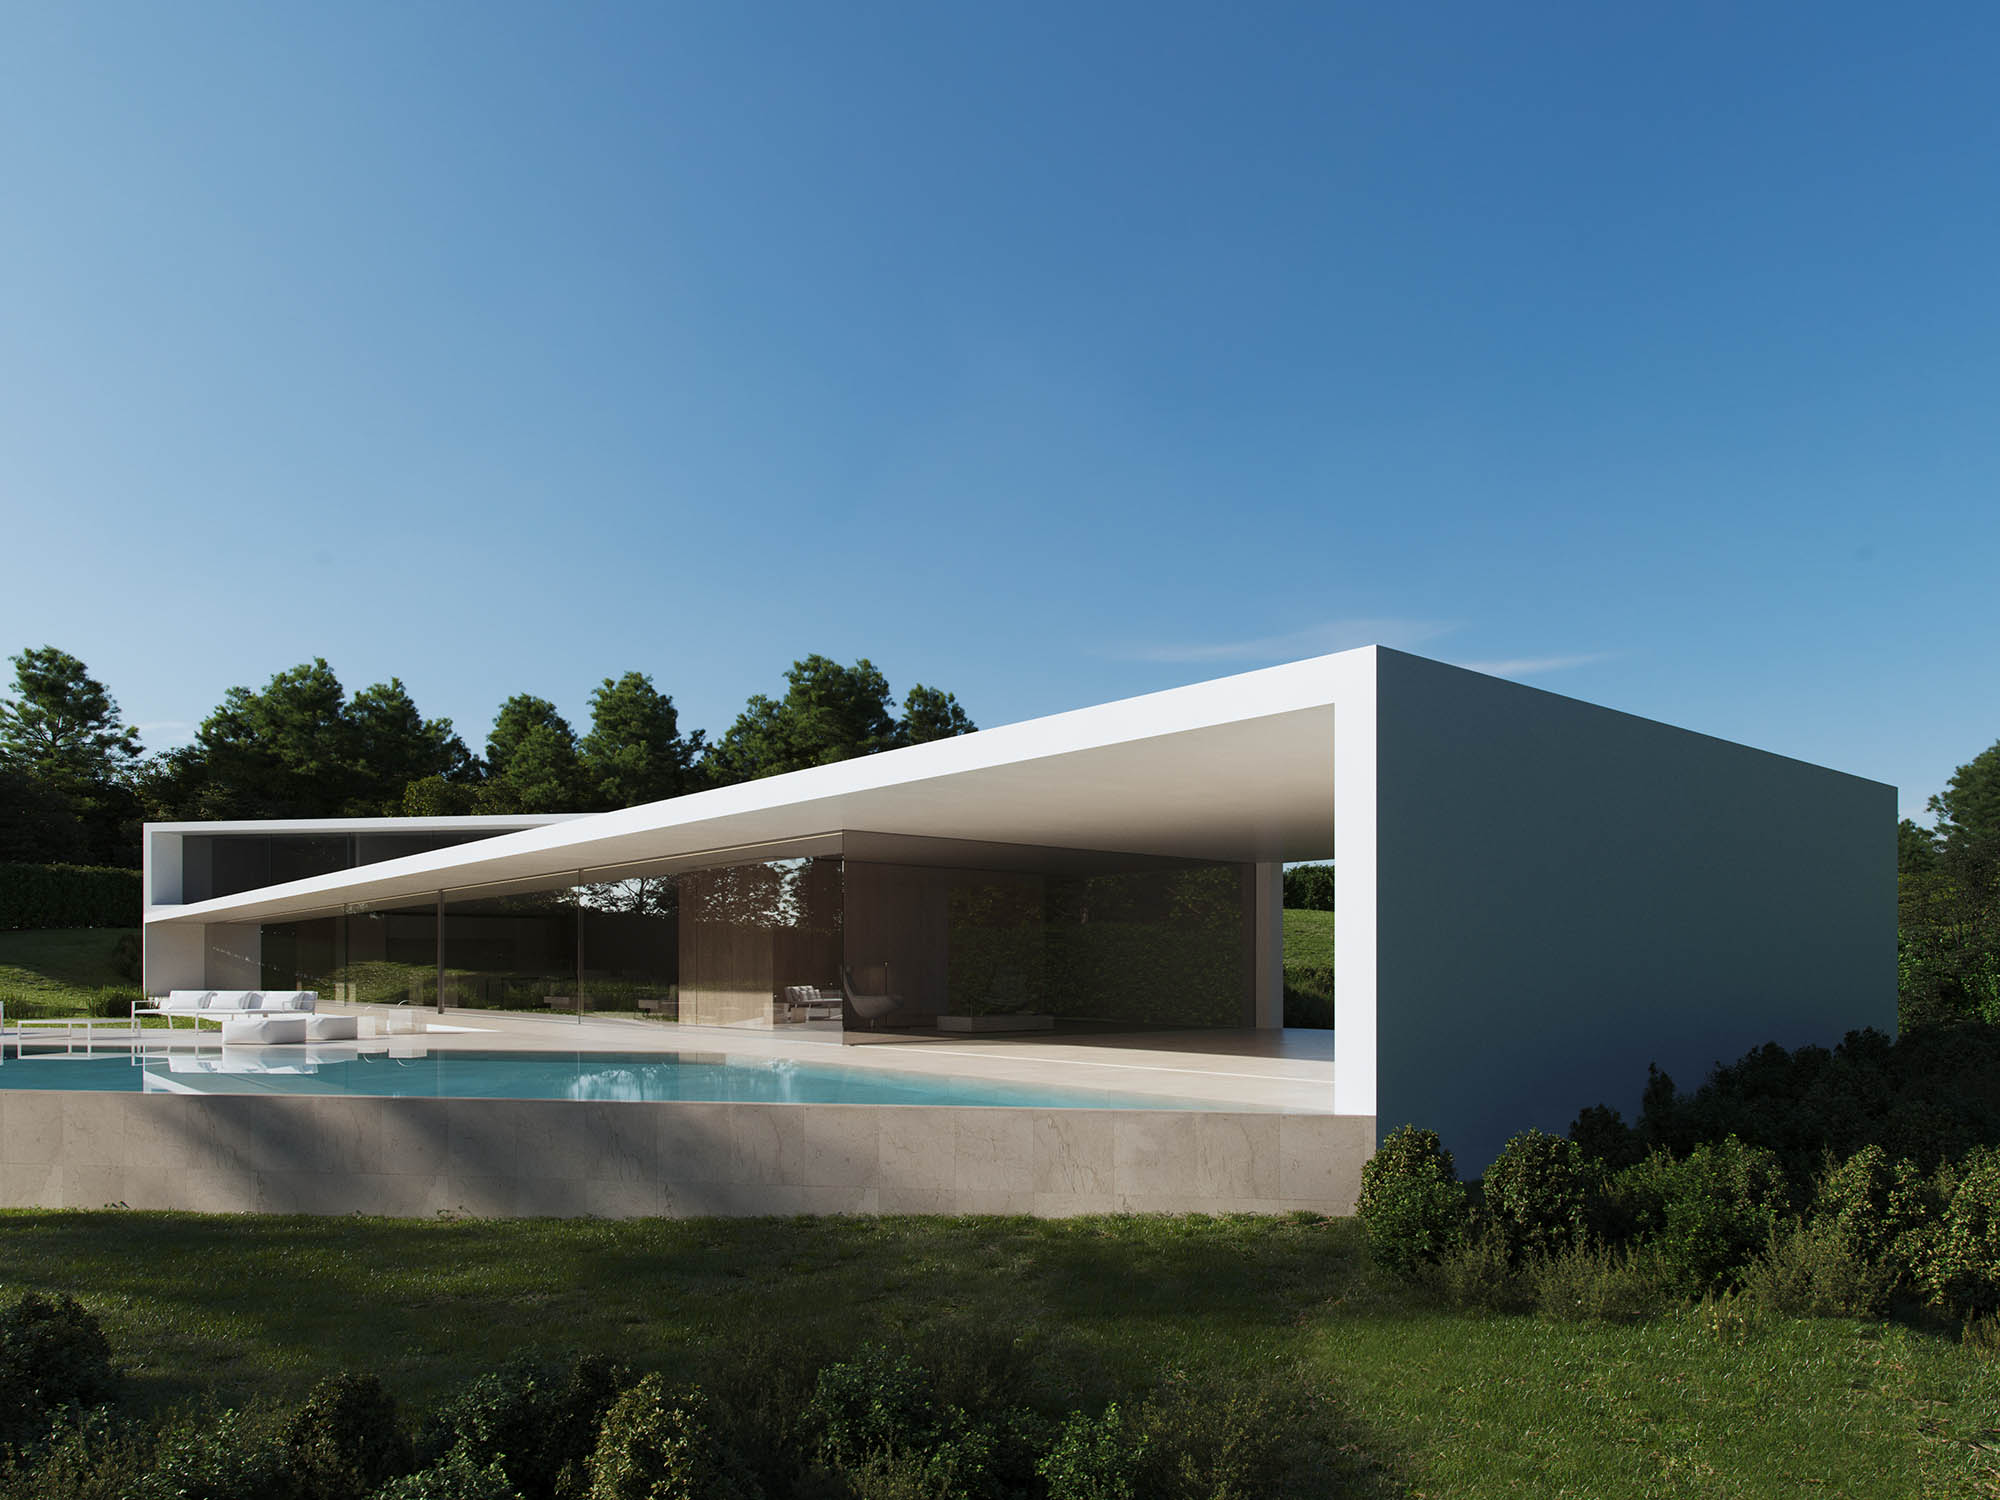 别墅设计,别墅设计案例,Fran Silvestre Arquitectos,西班牙,别墅设计方案,别墅装修,极简主义,山景别墅